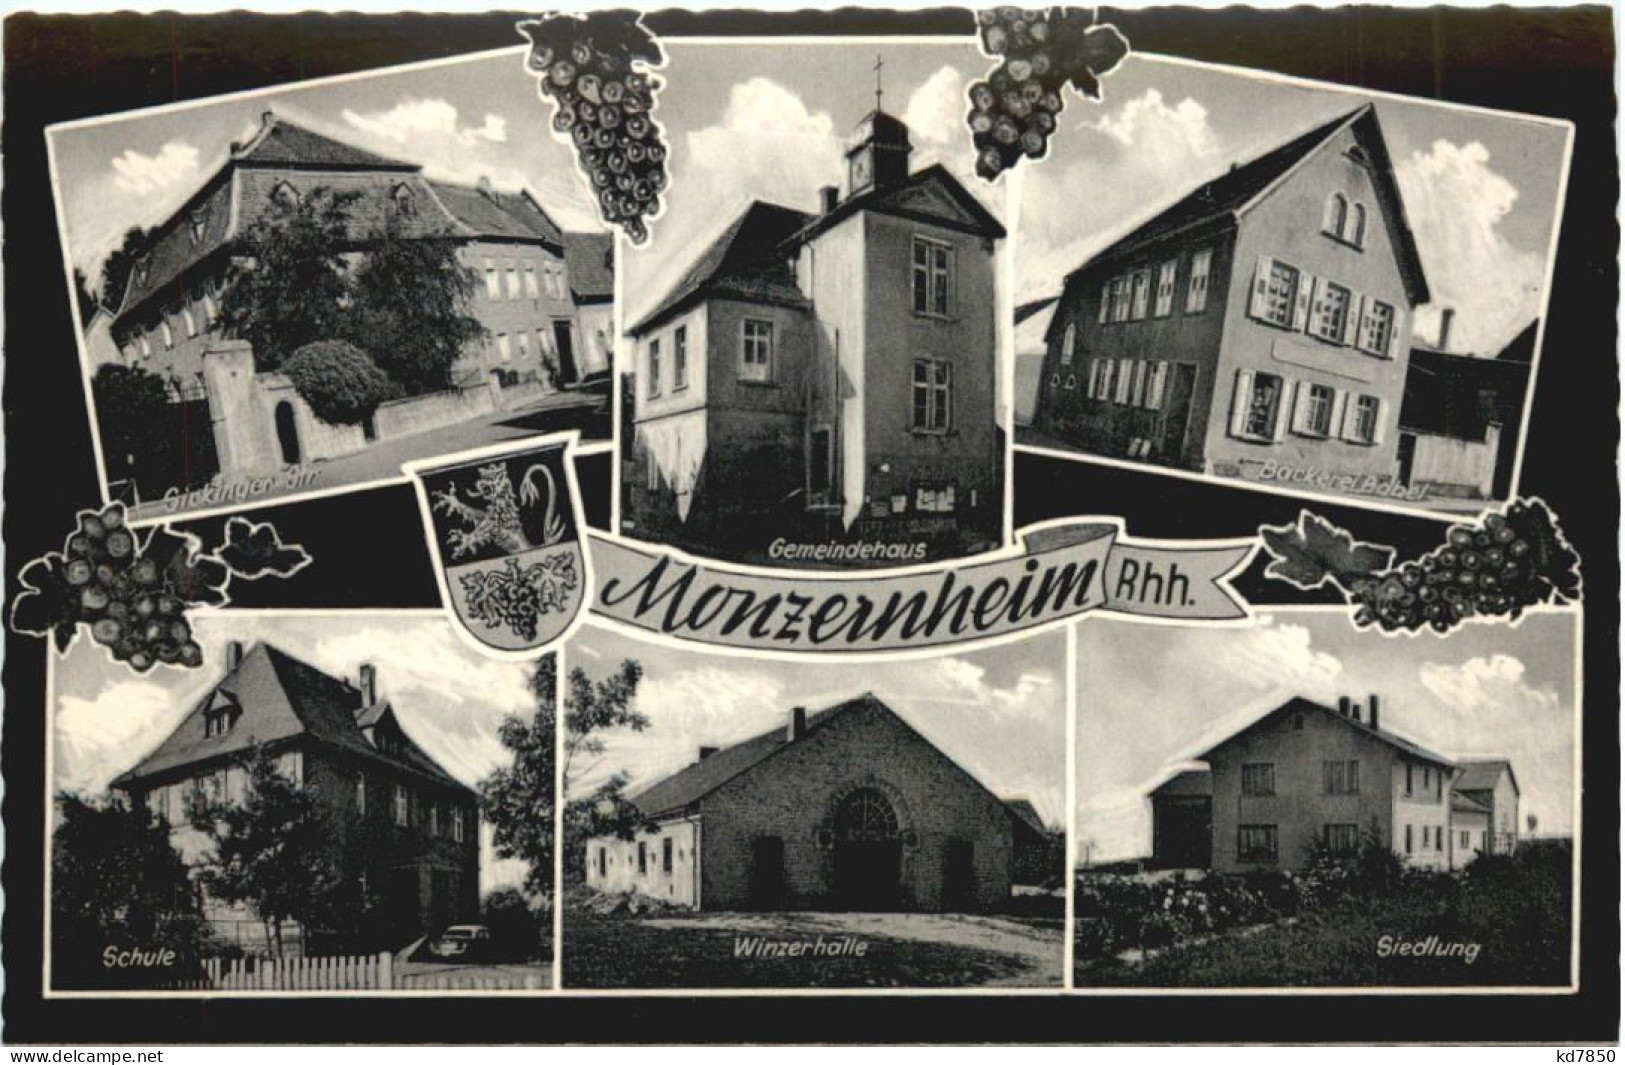 Monzernheim Rheinhessen - Alzey